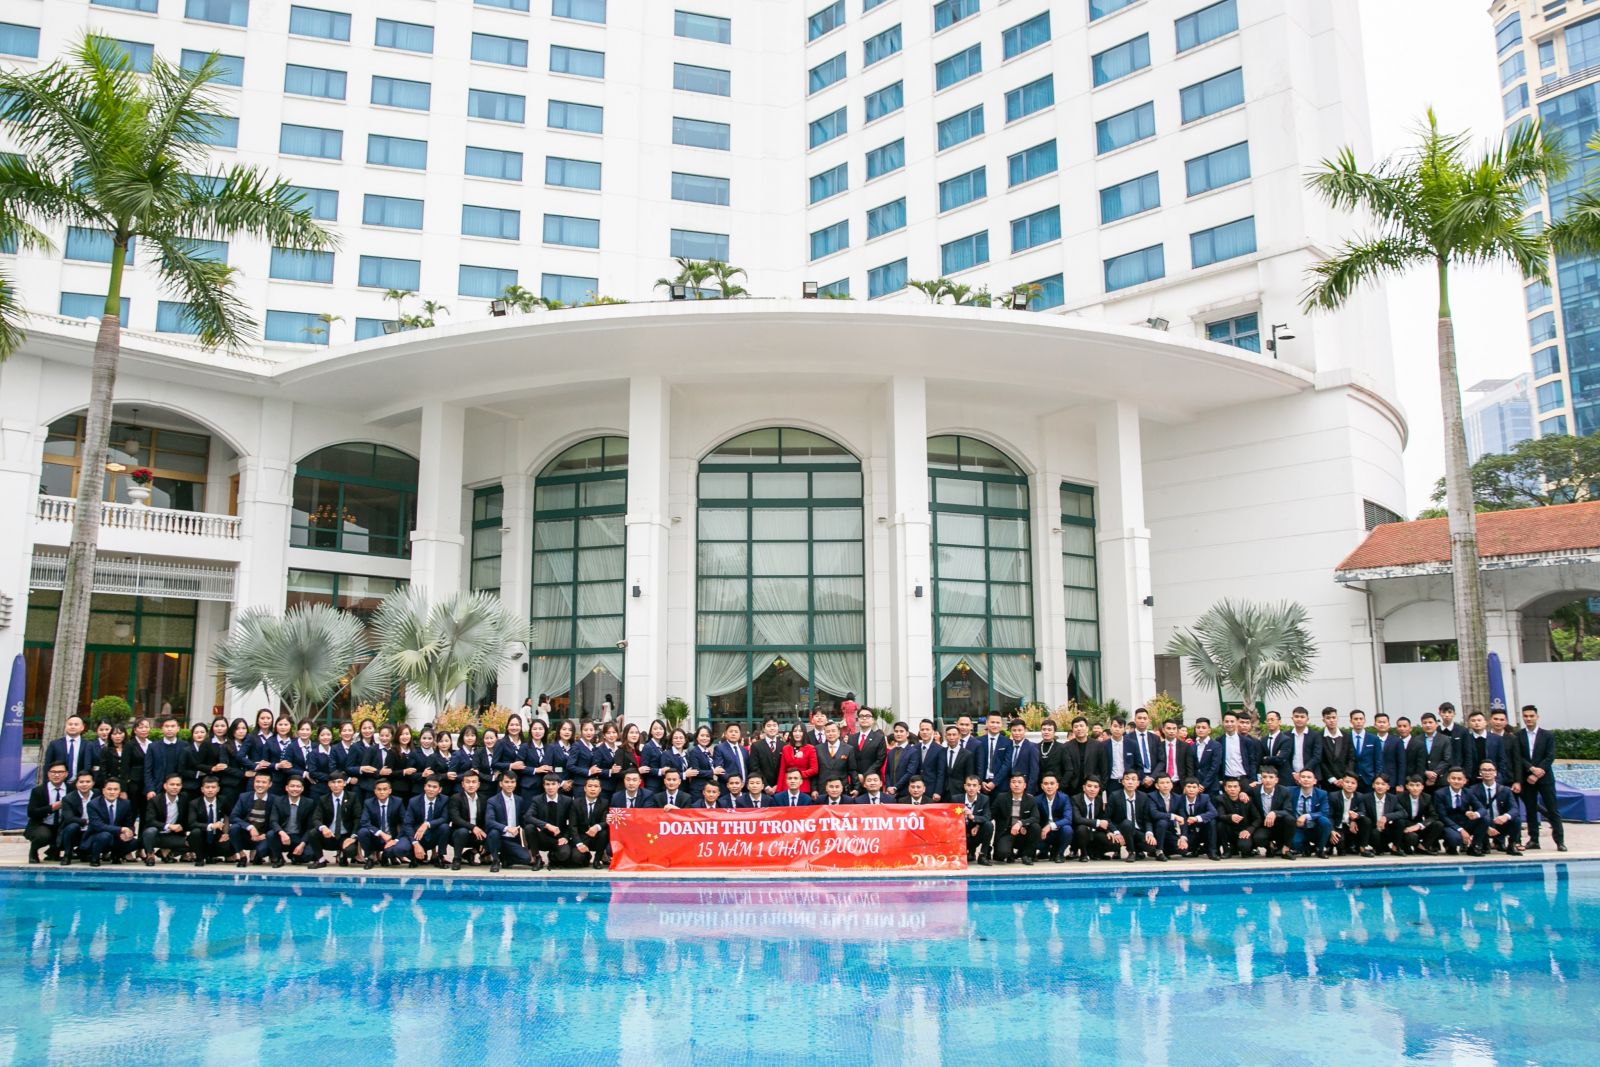 Doanh Thu Group- Hành trình 15 năm xây dựng thương hiệu